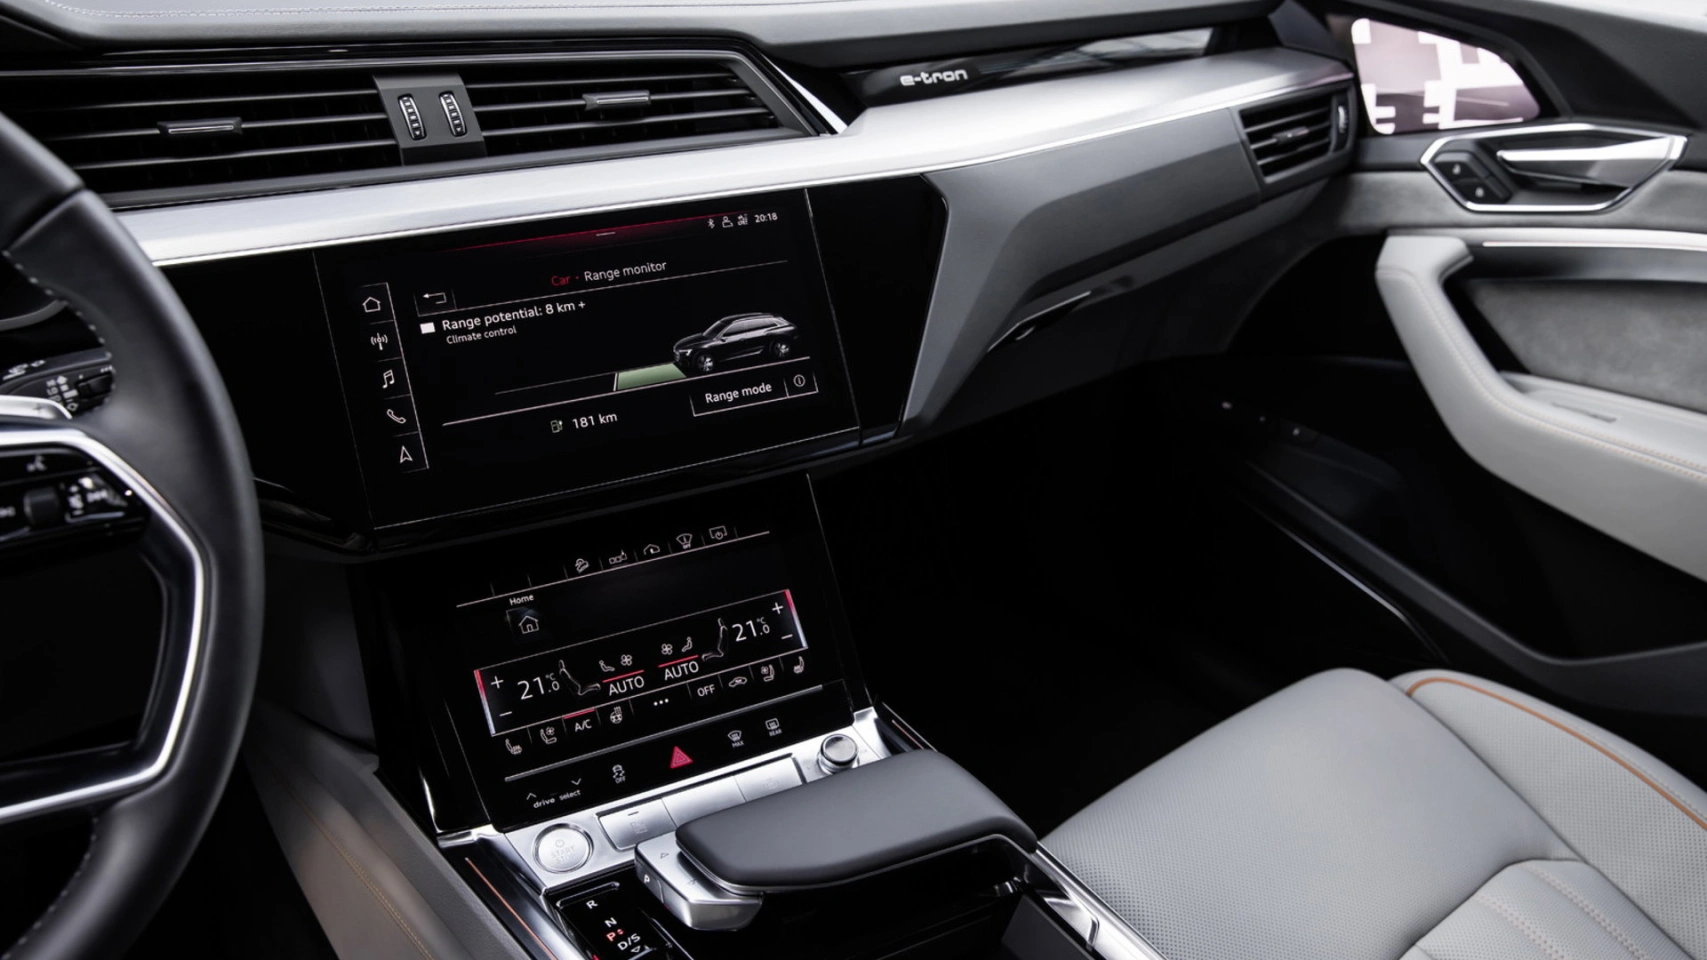 Net als andere Audi’s is de e-tron uitgerust met het MMI touch-systeem. Dat wordt aangestuurd via twee hoge-resolutieschermen die vrijwel alle conventionele knoppen en schakelaars vervangen